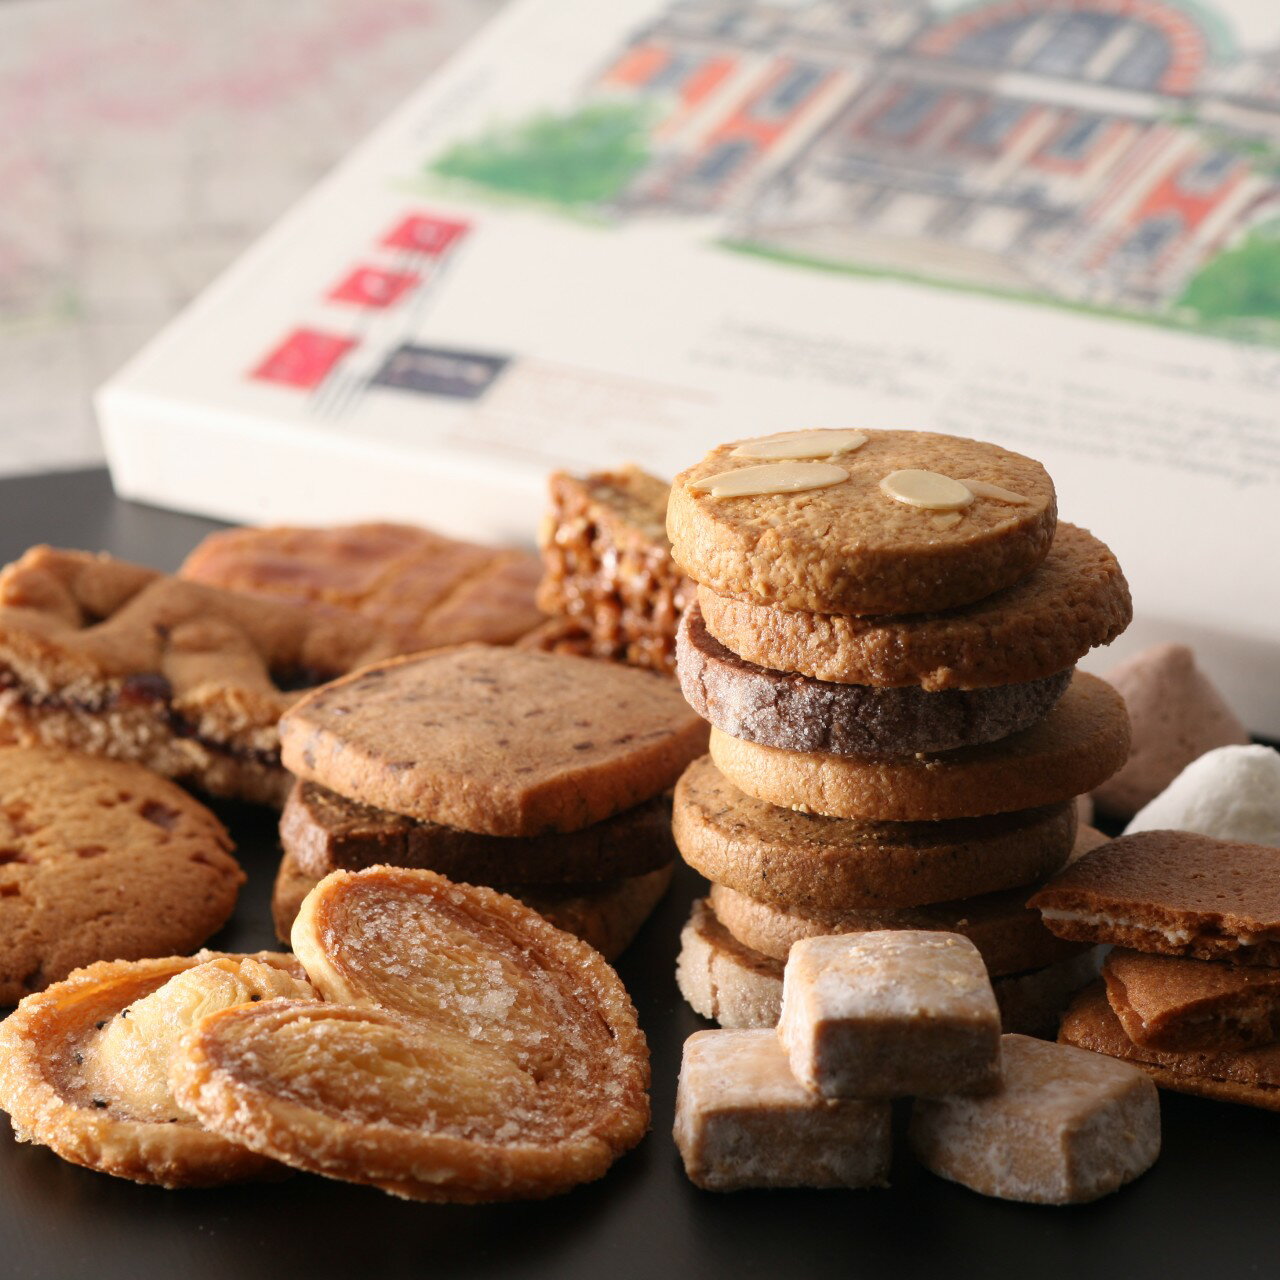 ル・ピノー クッキー クッキー 詰め合わせ ギフト 30個入り【ルピノー】きさんじ クッキー 焼き菓子 詰合せ 大阪 なんば